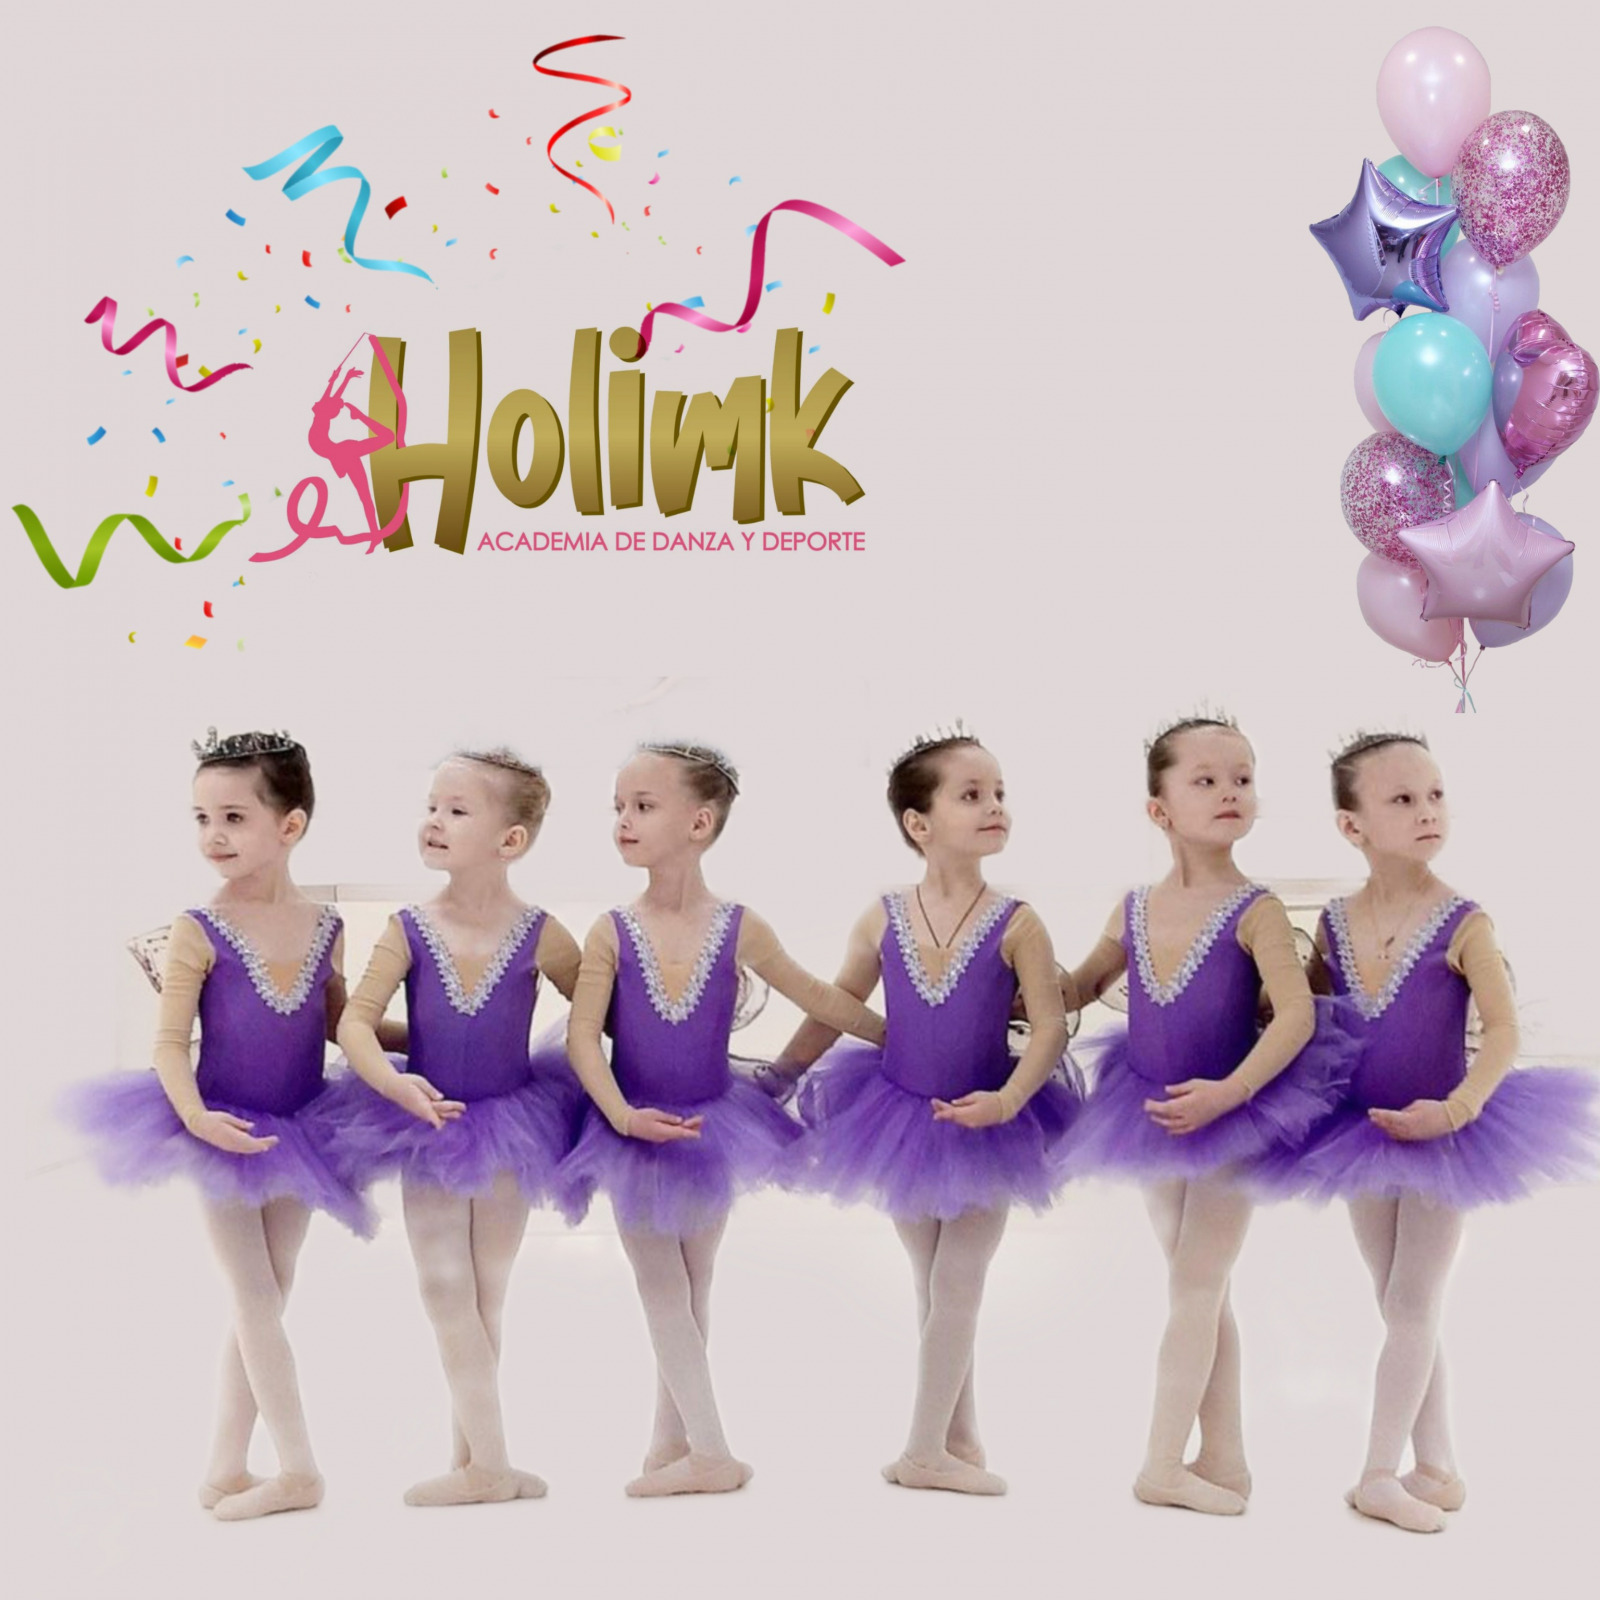 Holimk Academia de danza y deporte